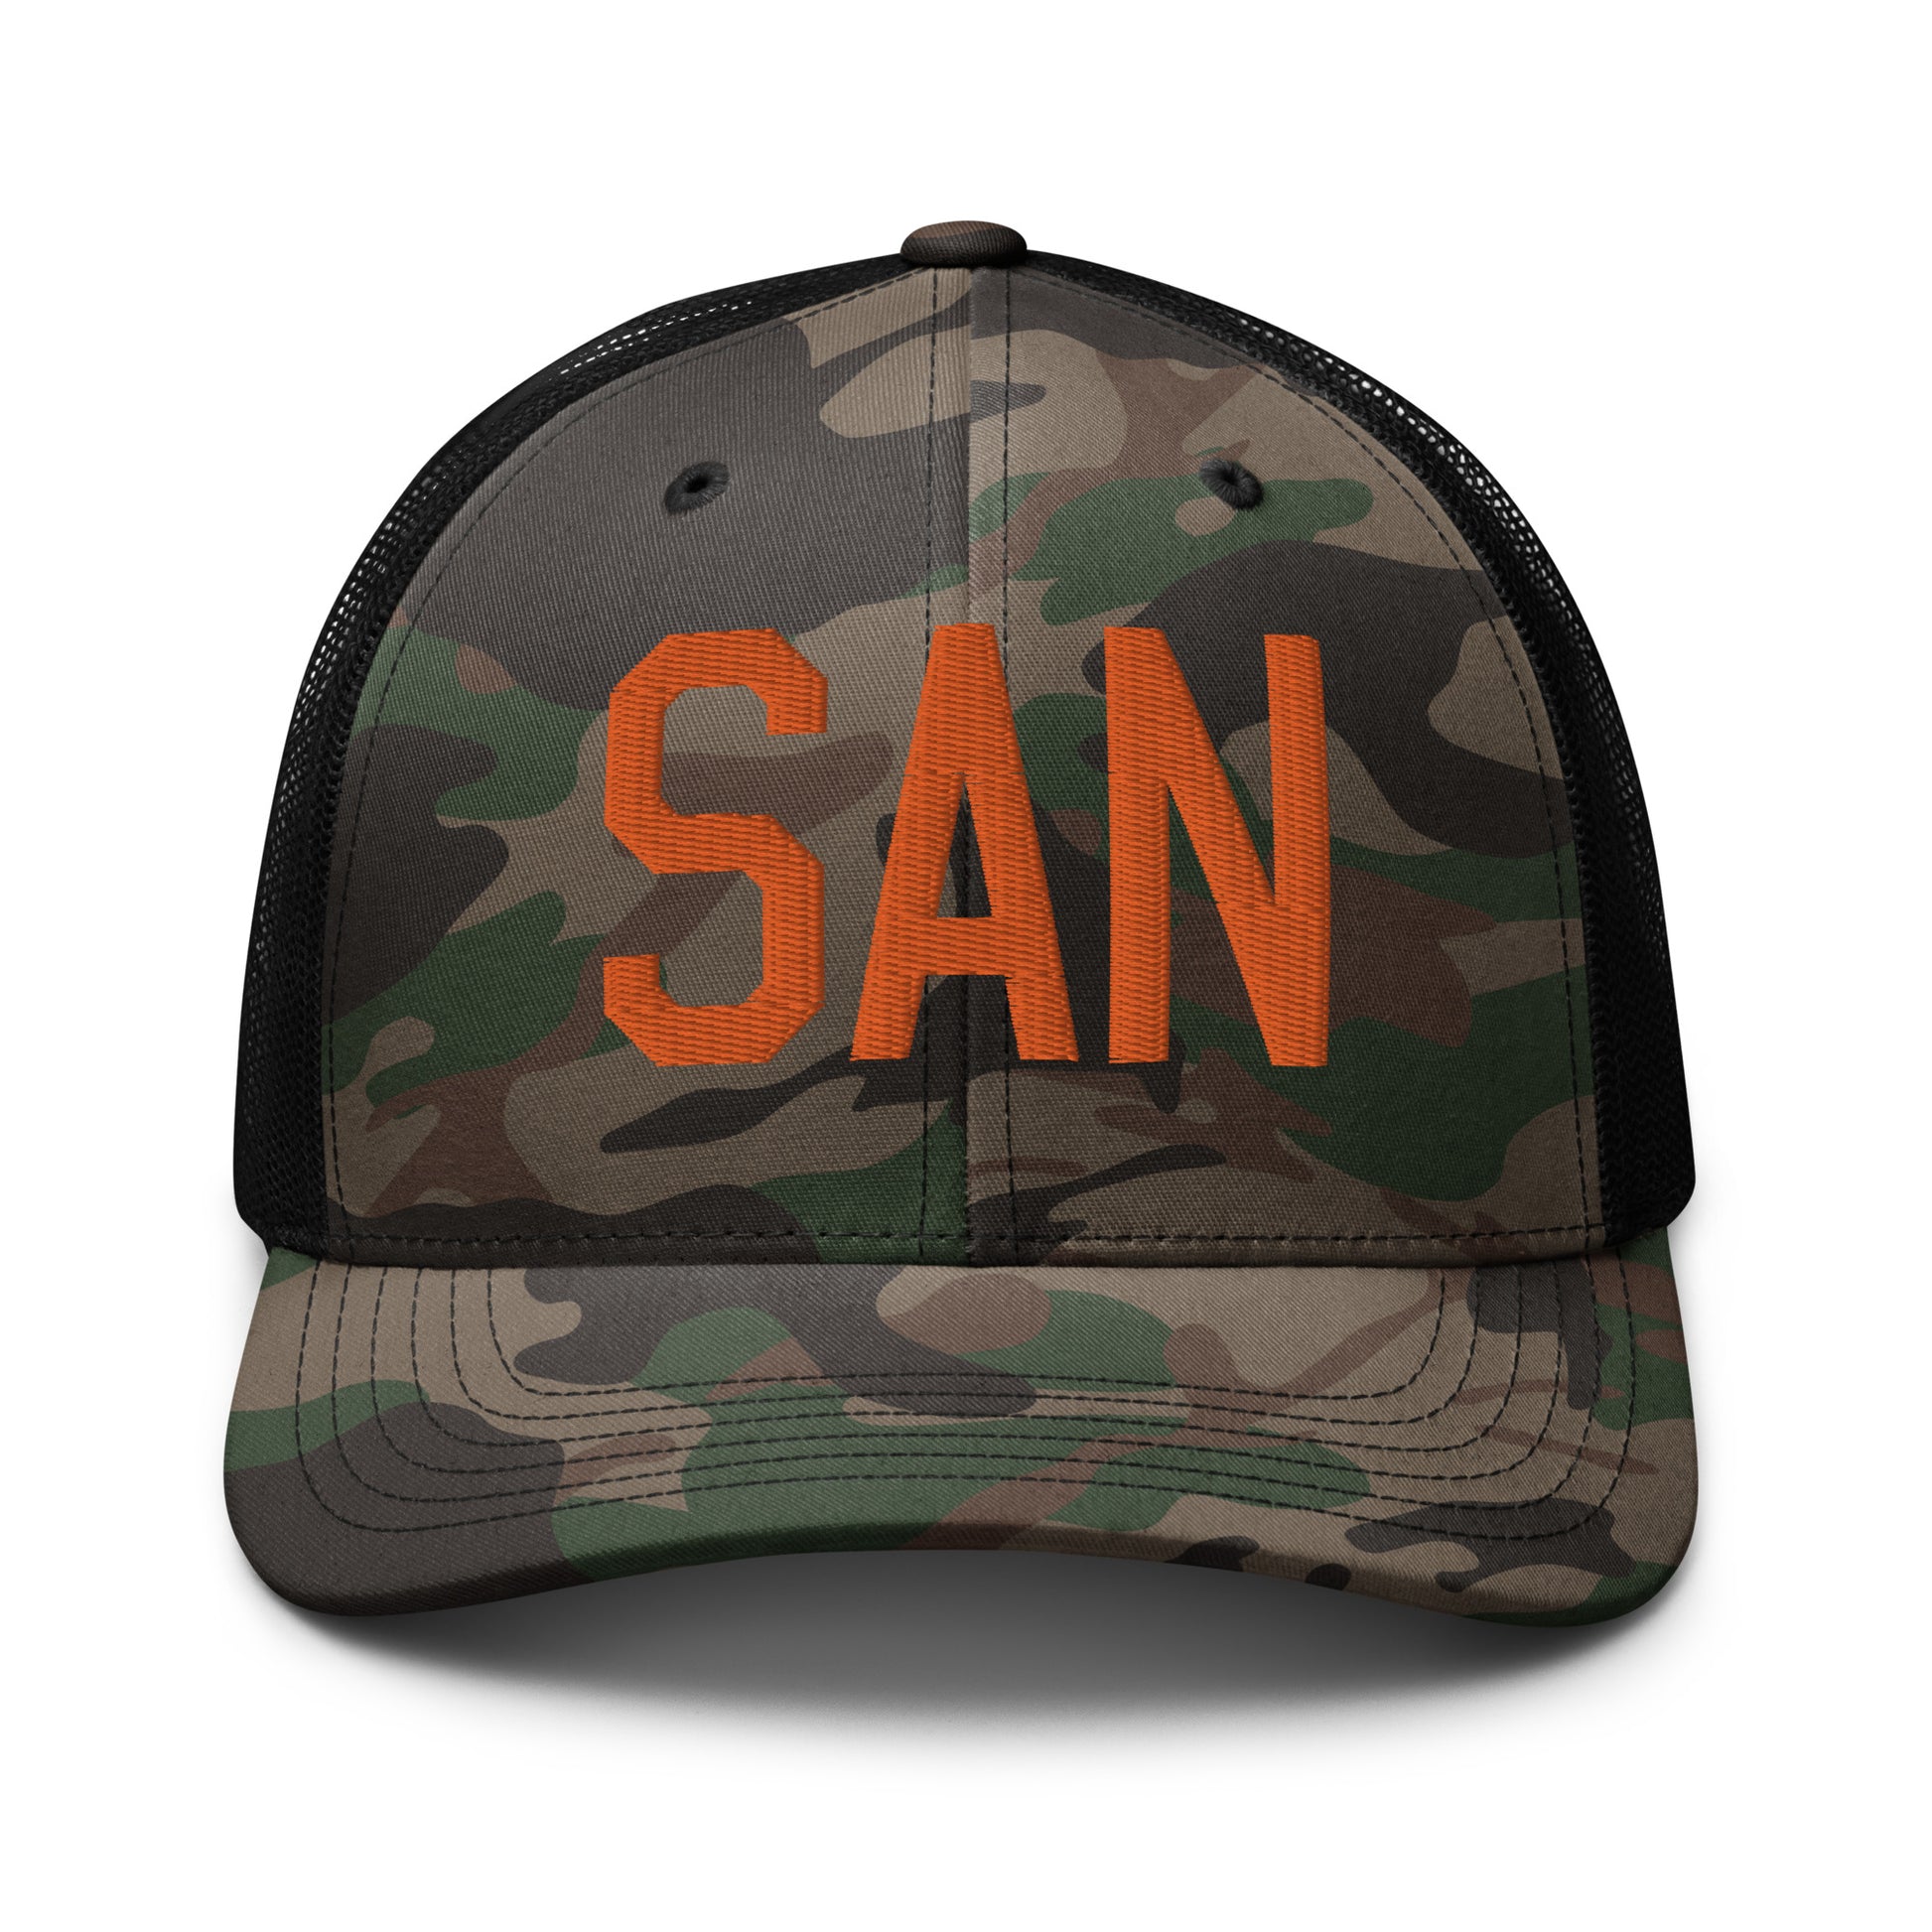 Airport Code Camouflage Trucker Hat - Orange • SAN San Diego • YHM Designs - Image 10